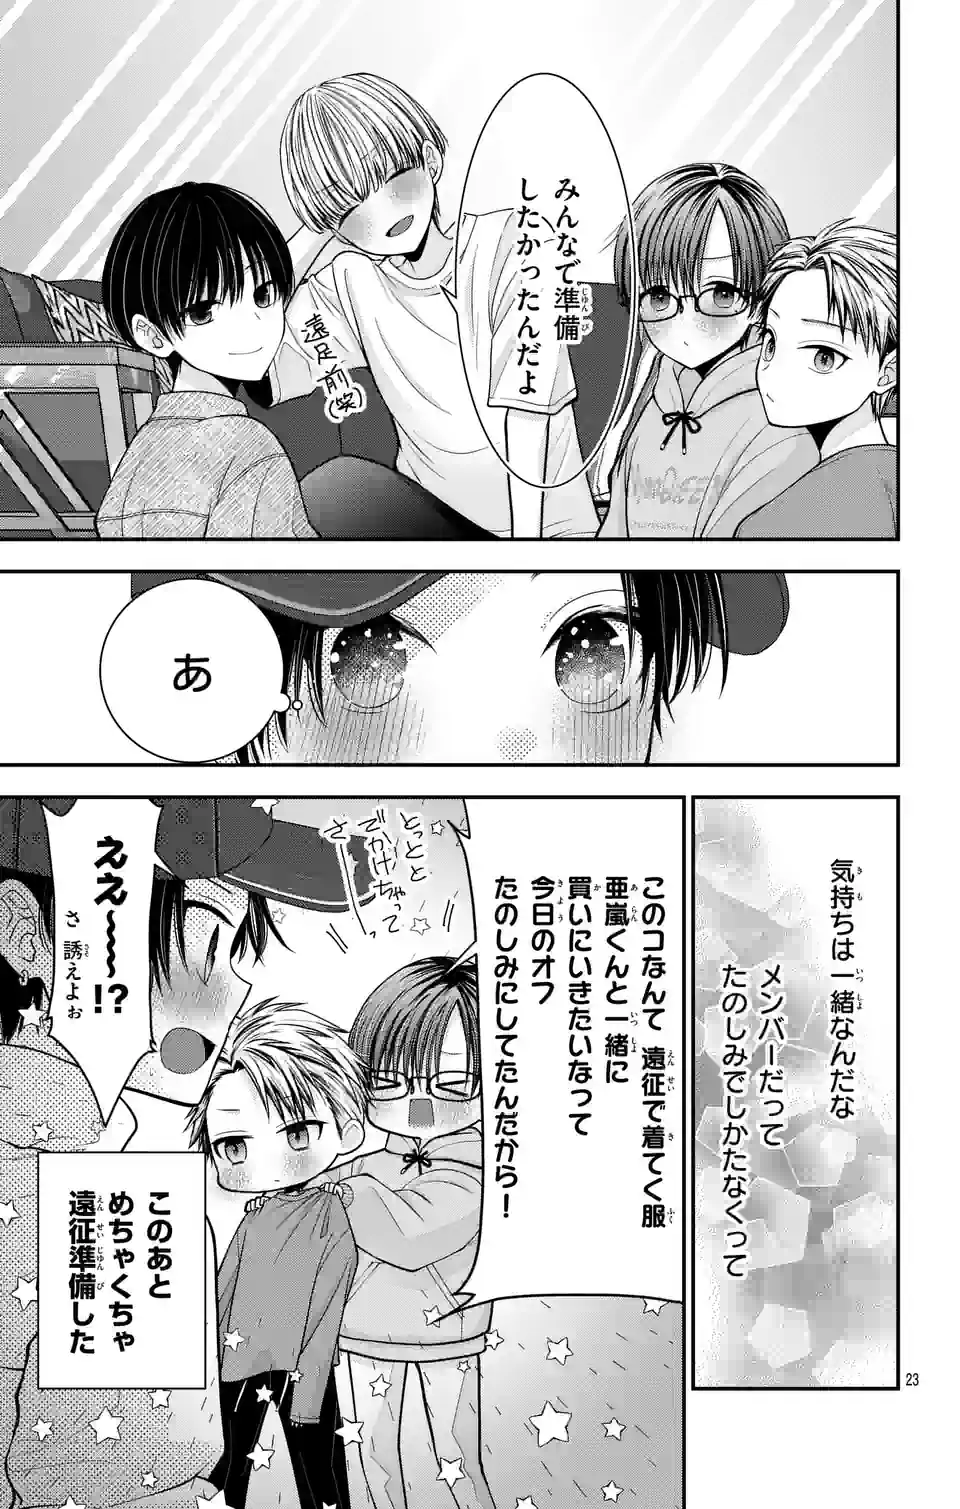 Oshi o Oseru Toki ni Oshitai You ni Osu Off - Chapter 12 - Page 23